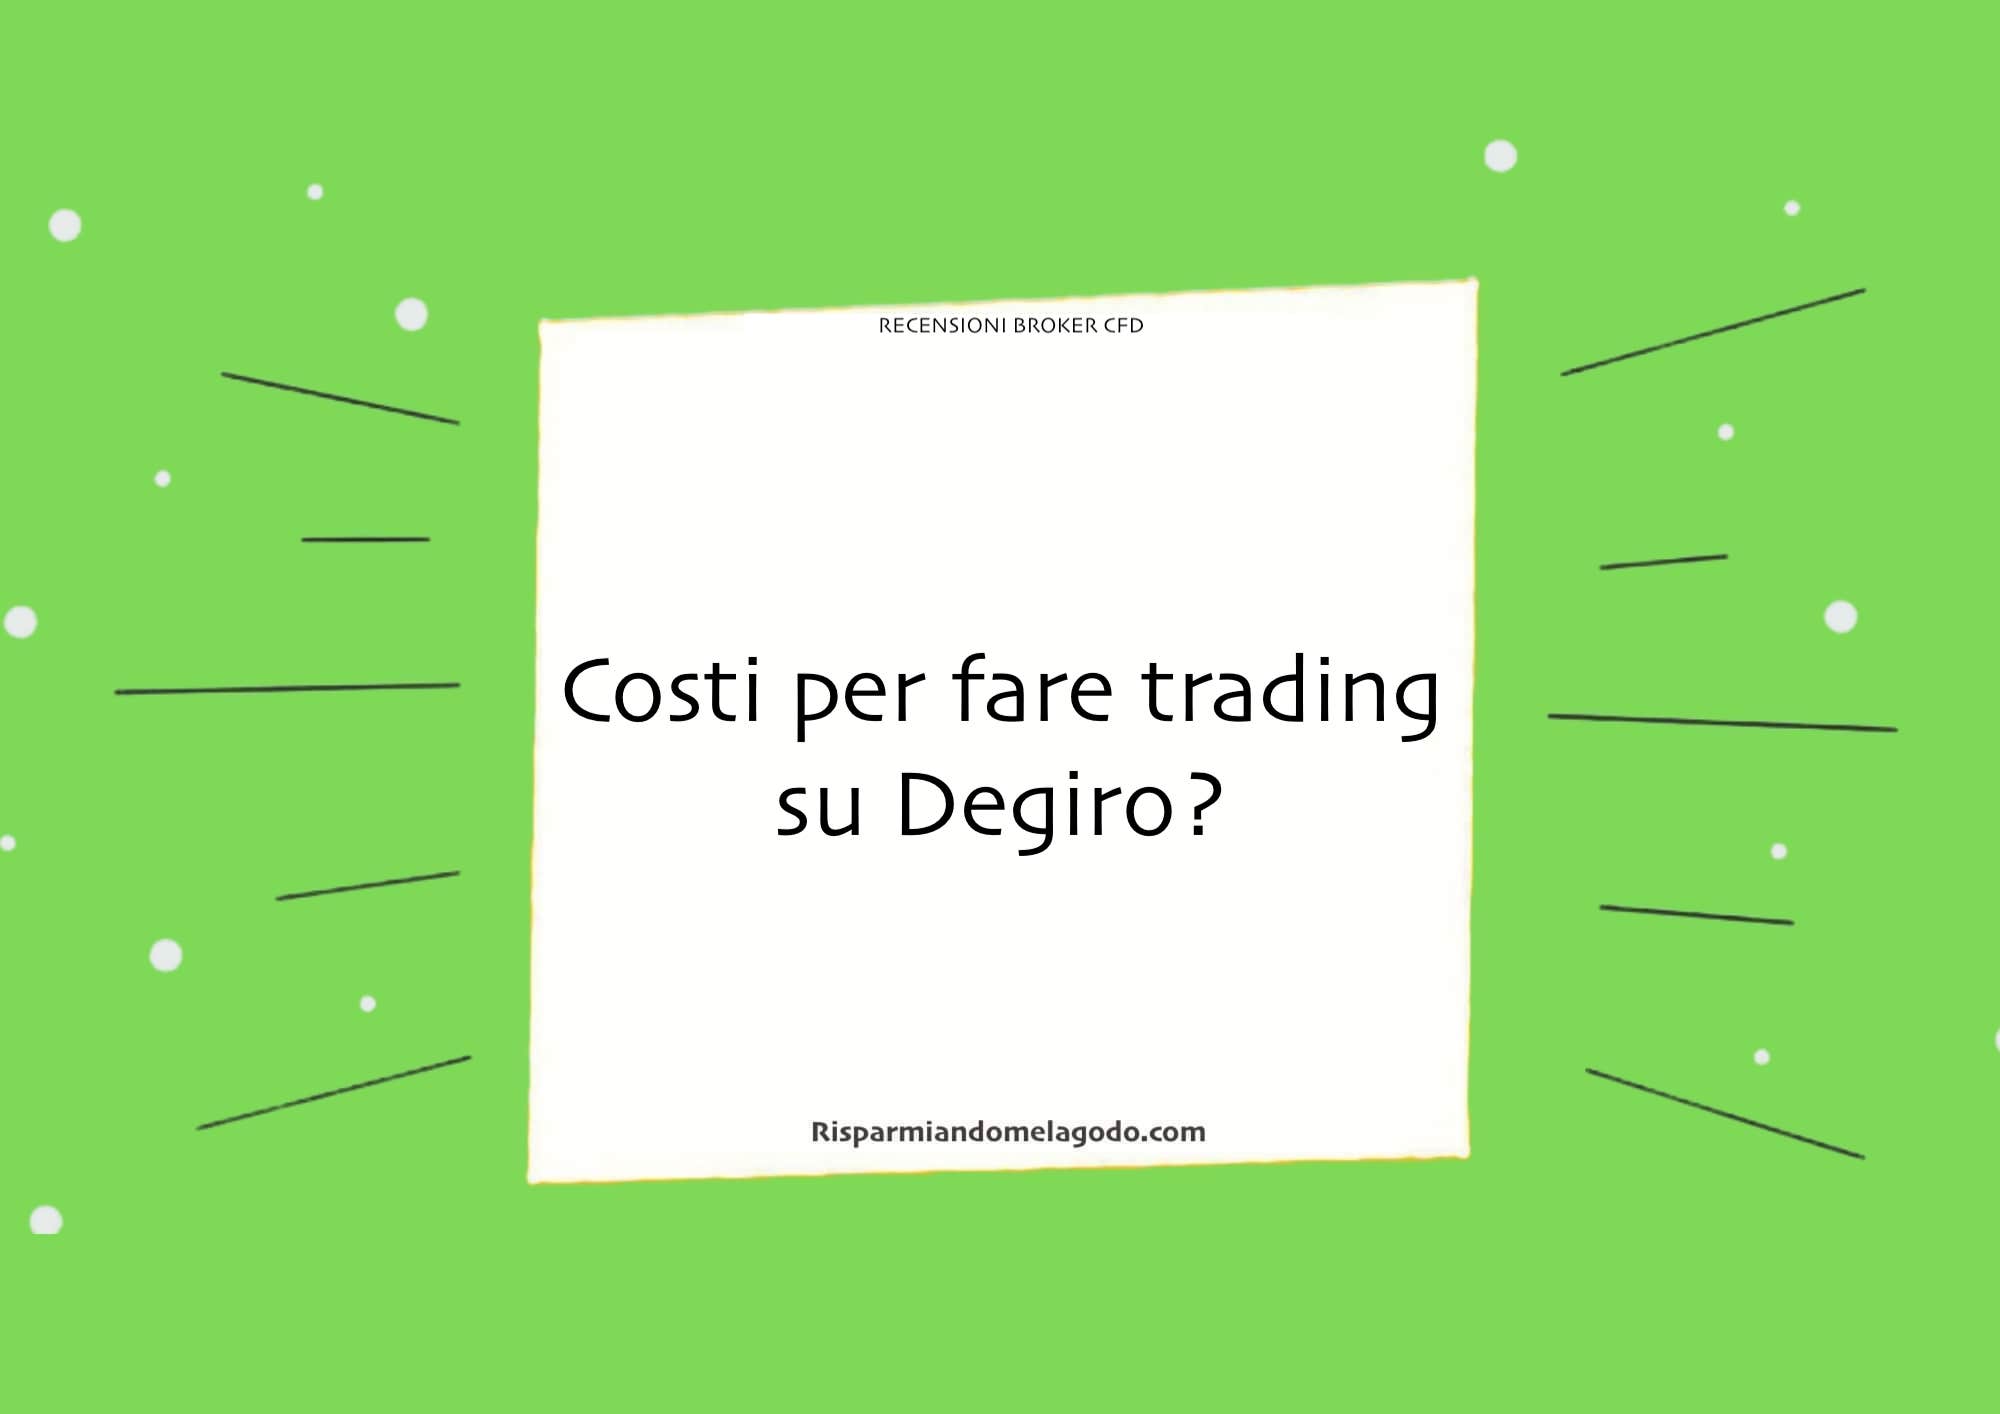 Costi per fare trading su Degiro?